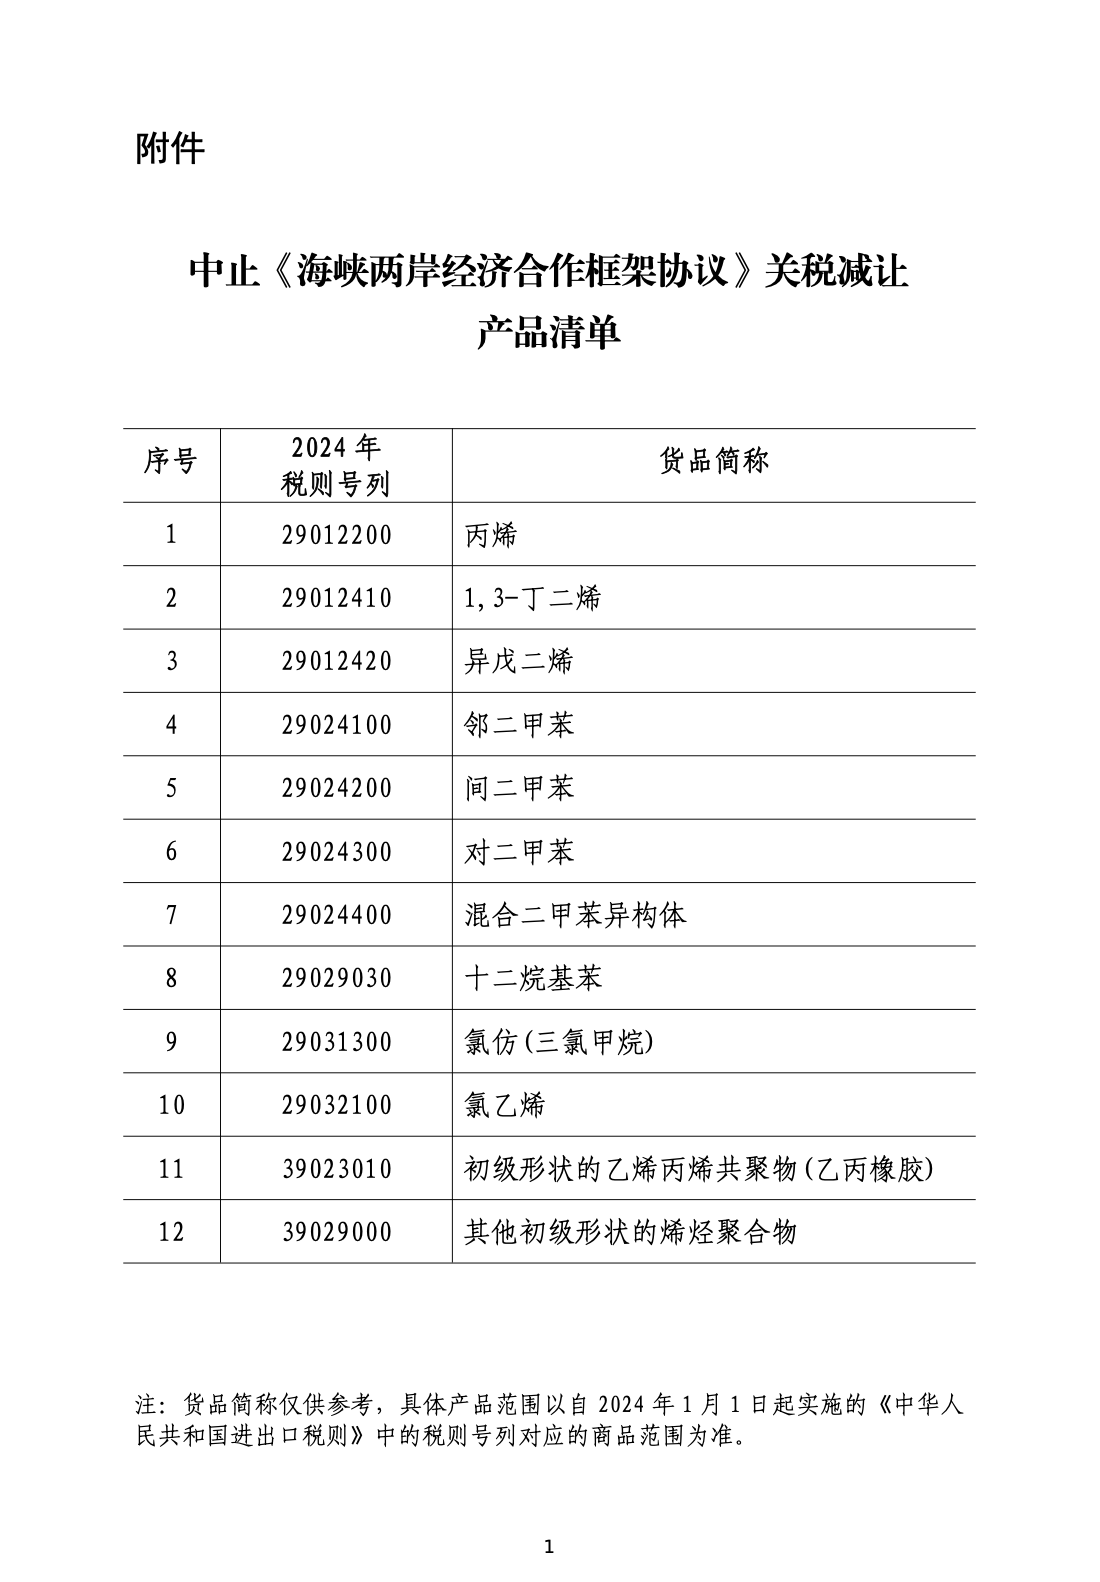 国务院关税税则委员会：中止台湾地区部分产品关税减让